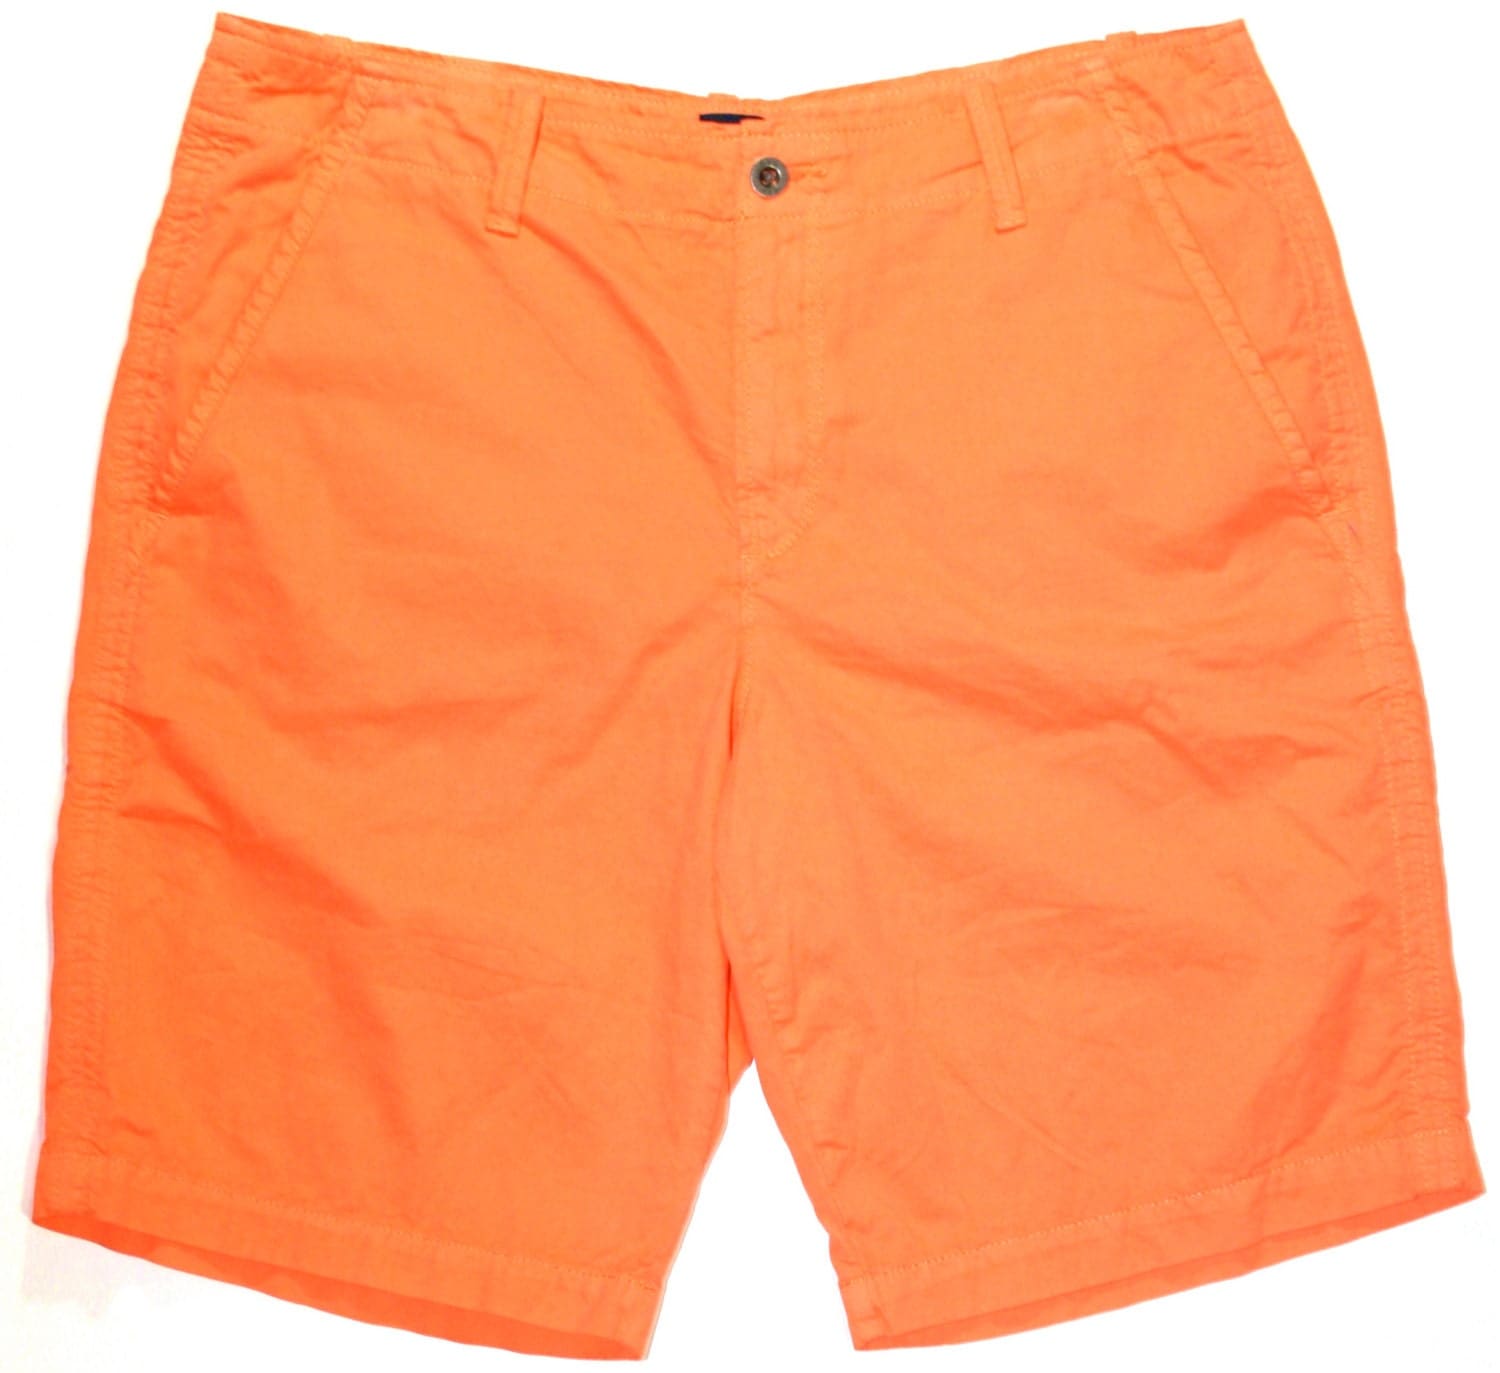 Vintage 90s Gap Orange Shorts Mens Size 34 by VintageMensGoods